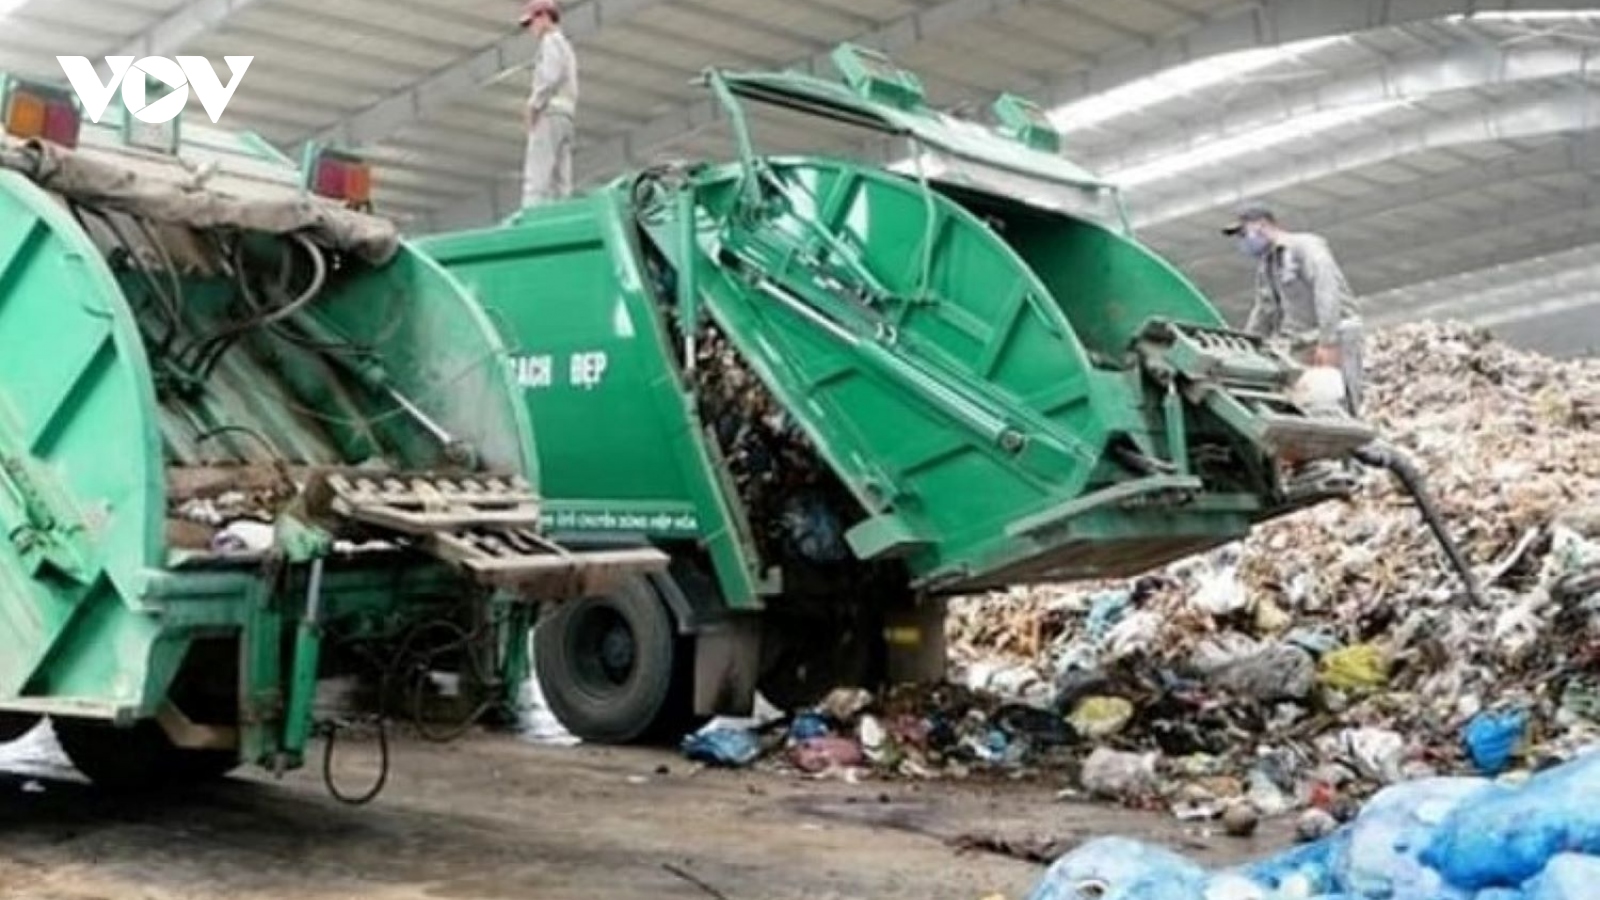 Quảng Ngãi: Người dân đã đồng ý để xe chở rác vào bãi